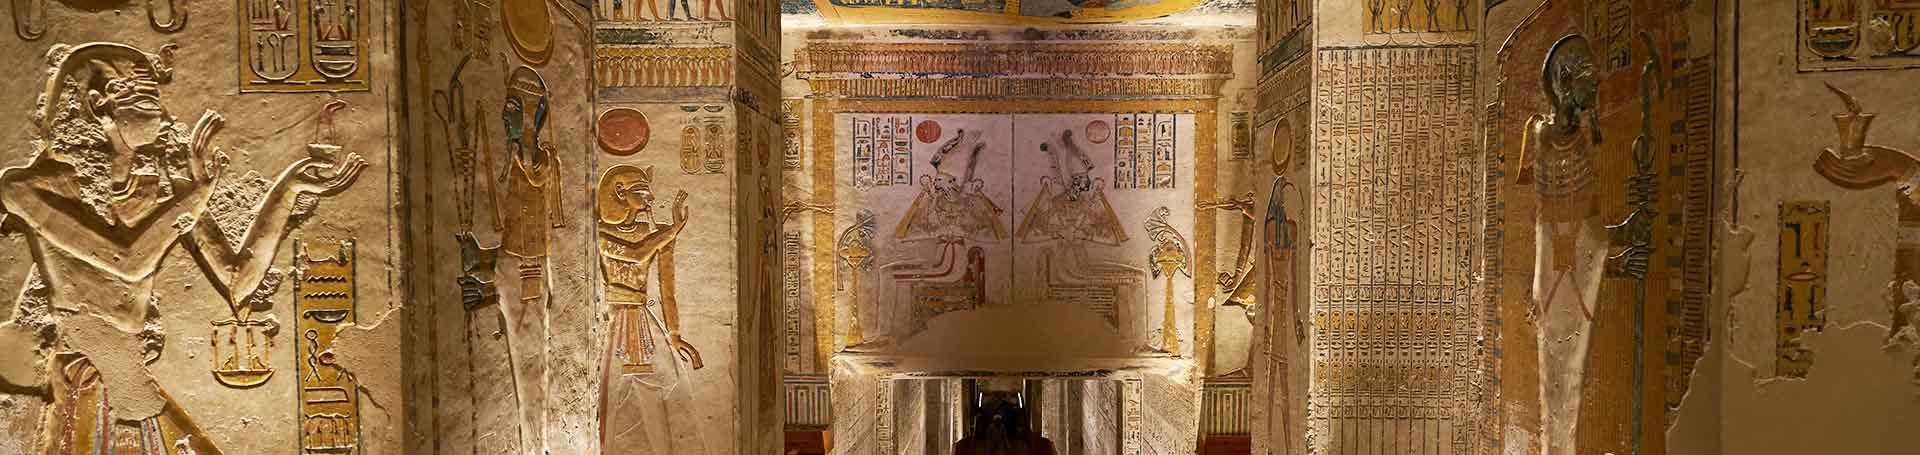 Inside the Giza pyramid